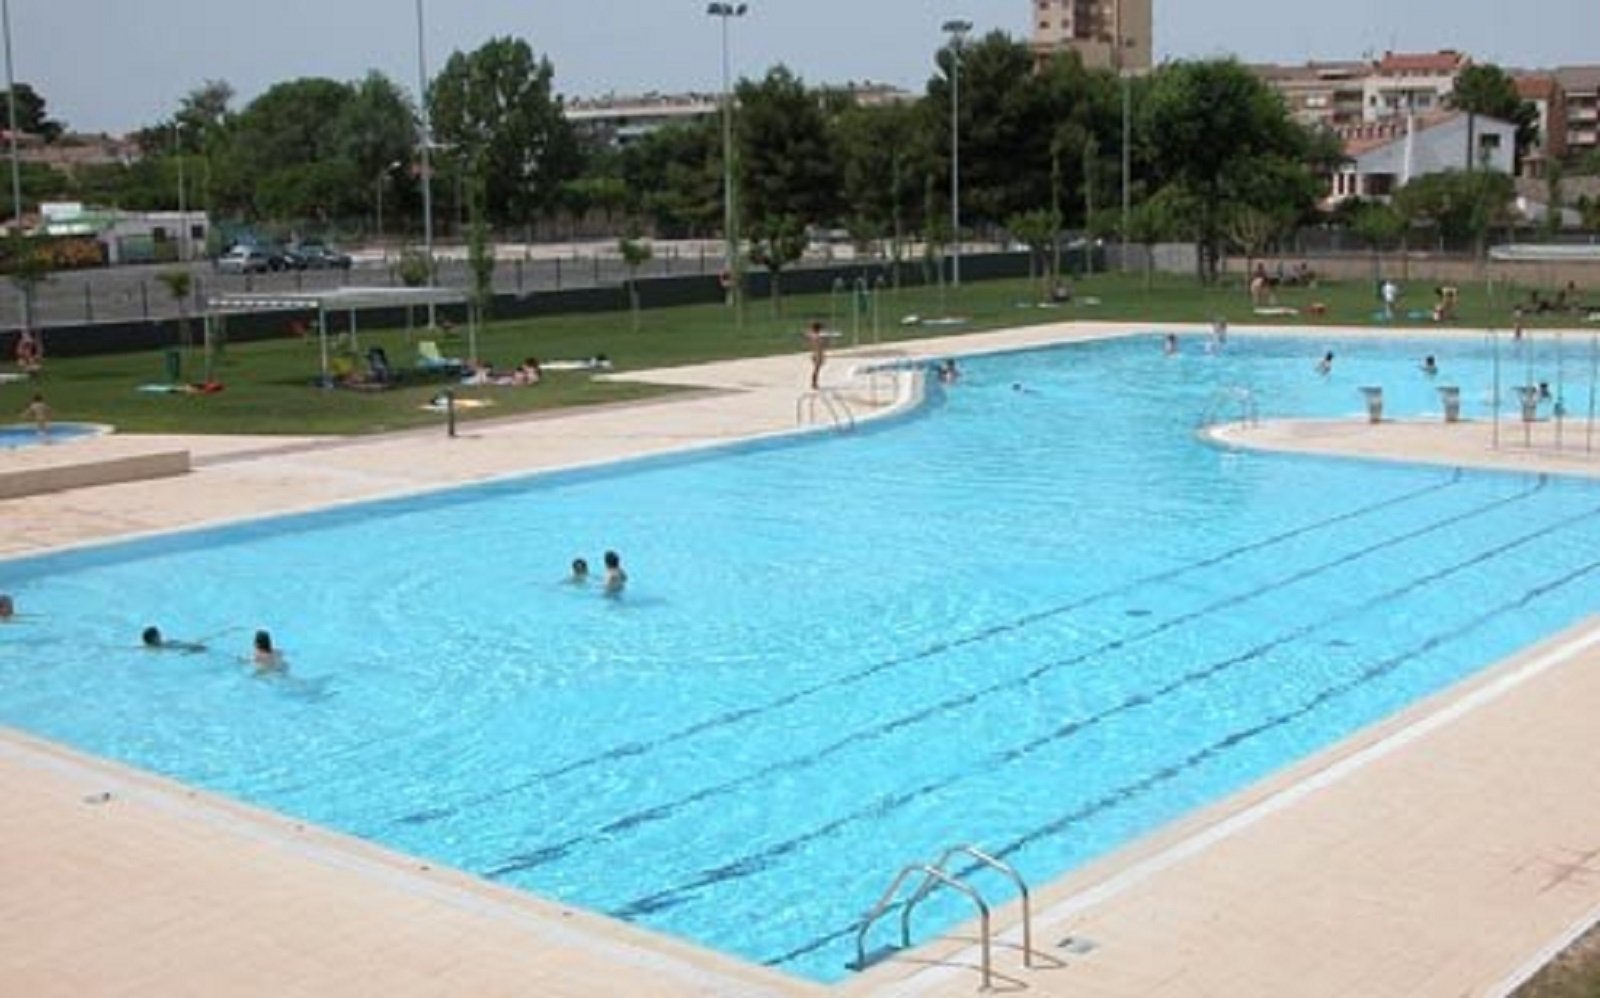 Un nen de 6 anys mor ofegat a la piscina municipal de Tàrrega